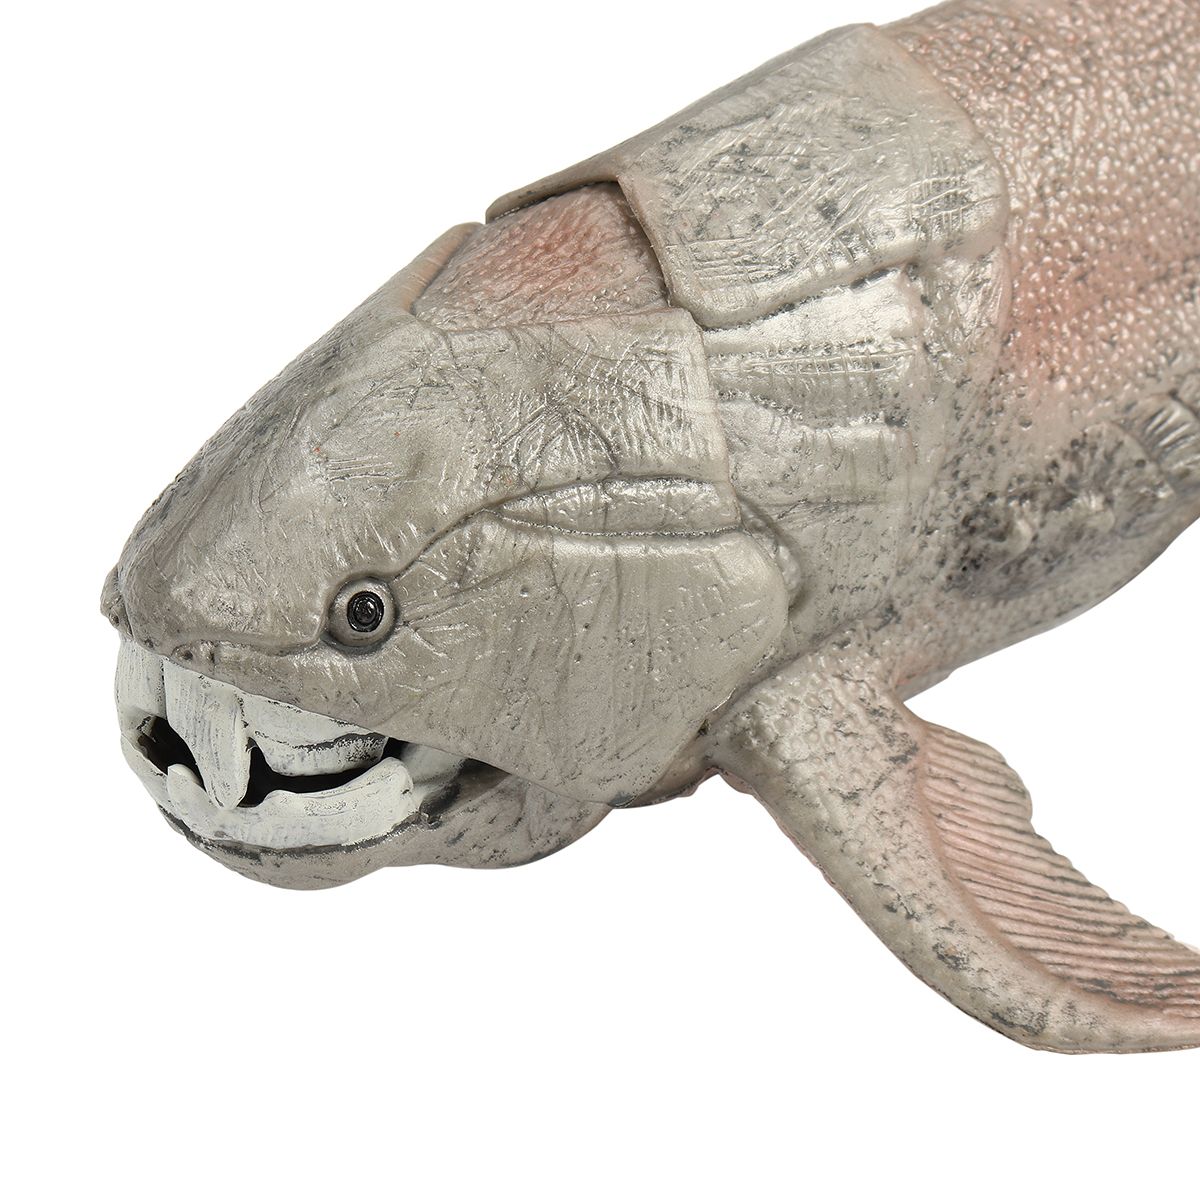 20-cm-79quot-Sea-Life-Dunkleosteus-Dinosaurs-Soft-PVC-Action-Figure-Toys-Model-1577587